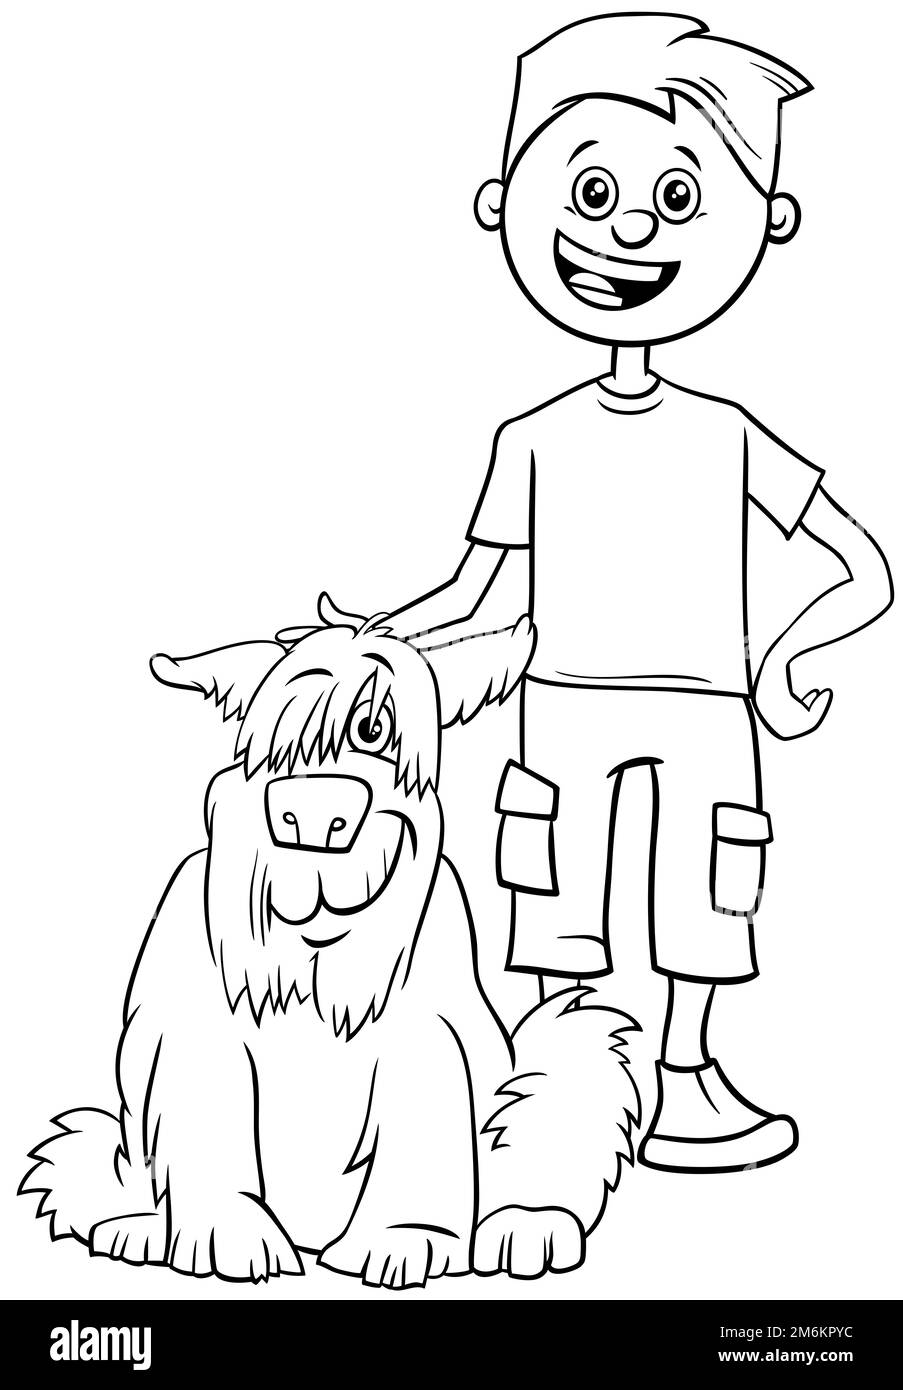 Personnage de garçon de dessin animé avec sa page de coloriage de chien Banque D'Images